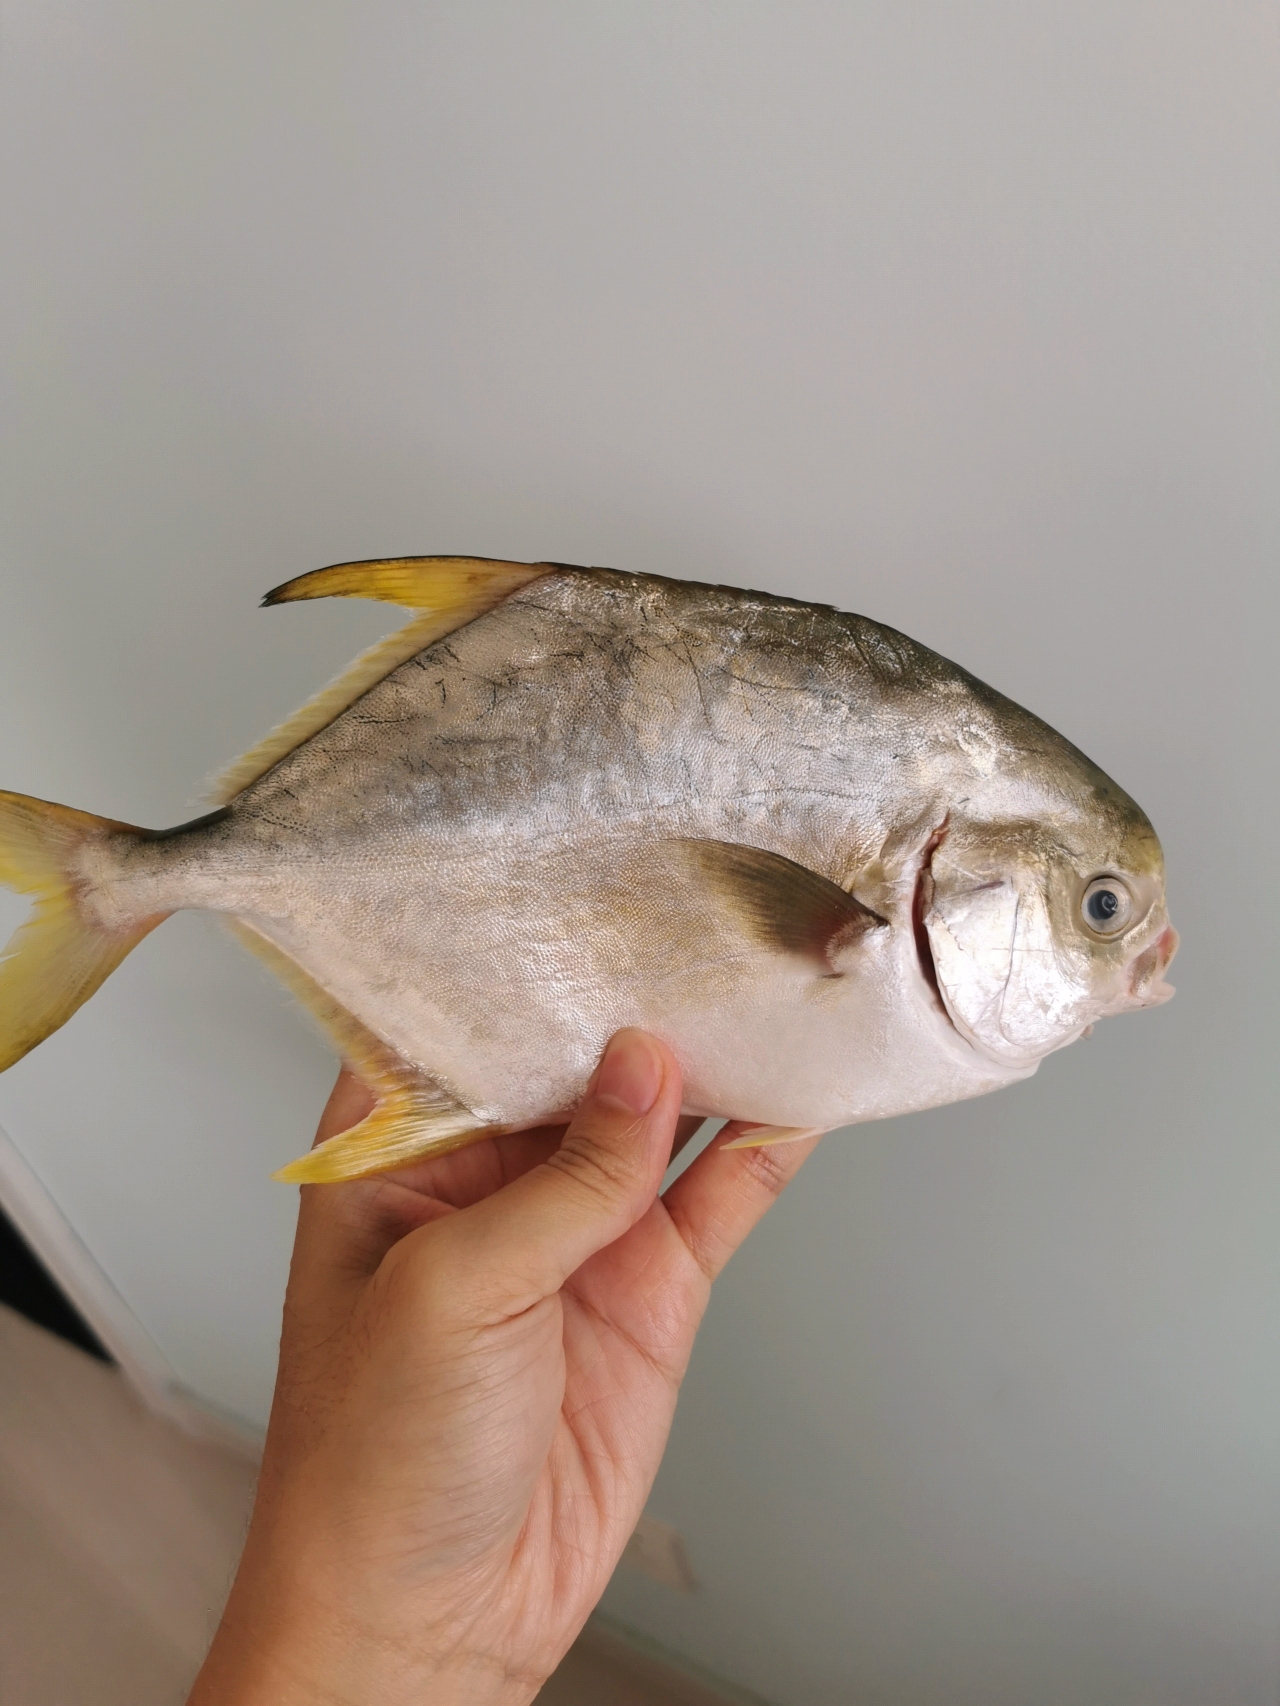 红烧金鲳鱼